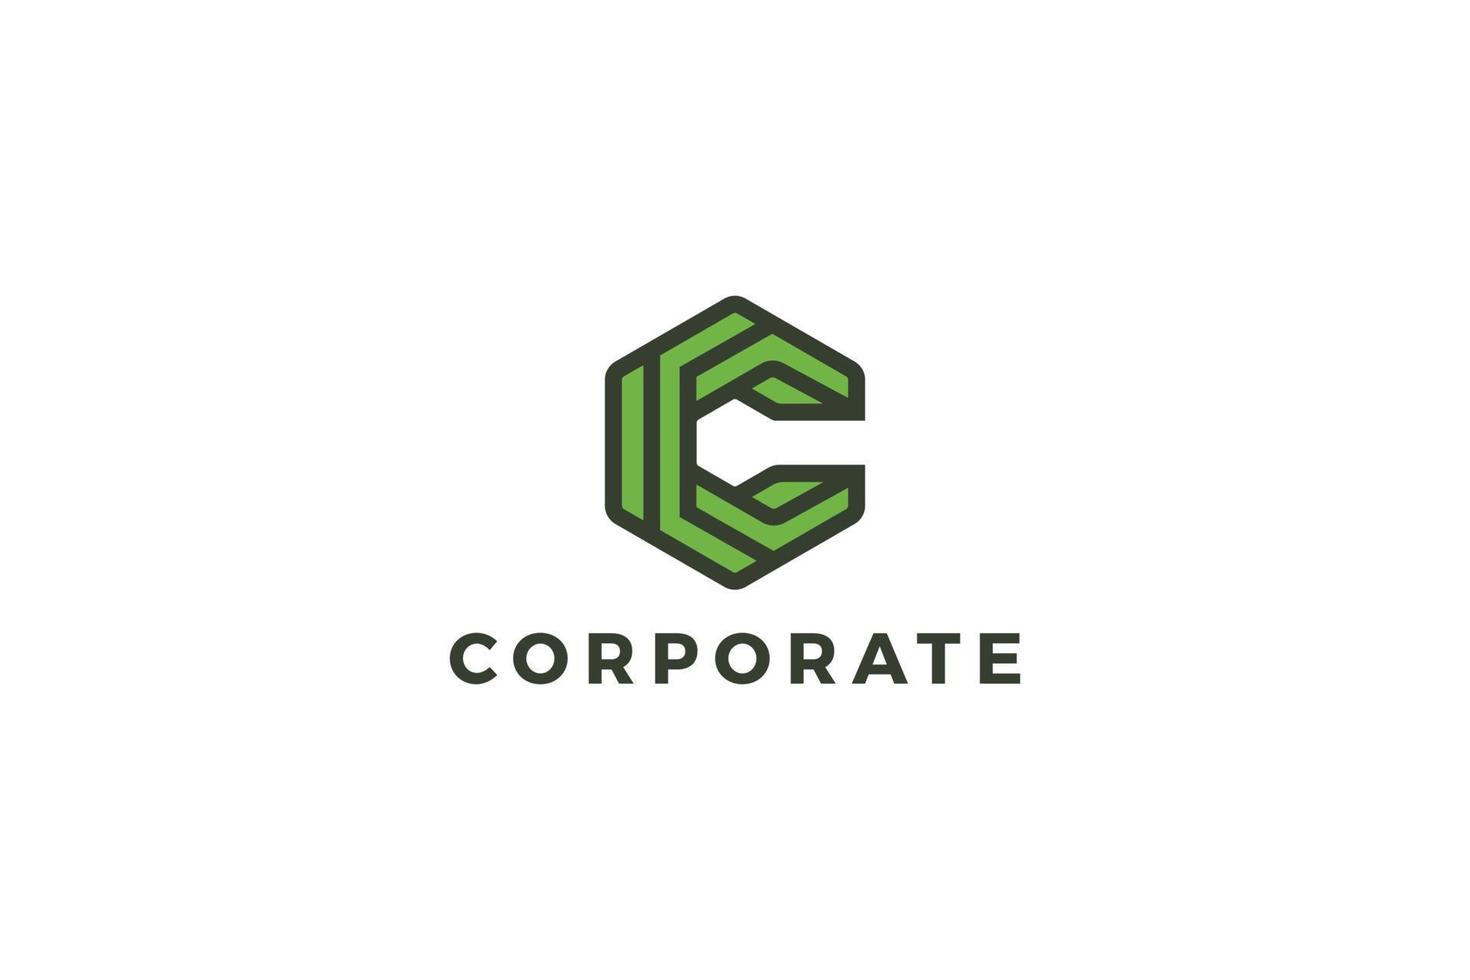 Letter c green color hexagon abstract logo design vector